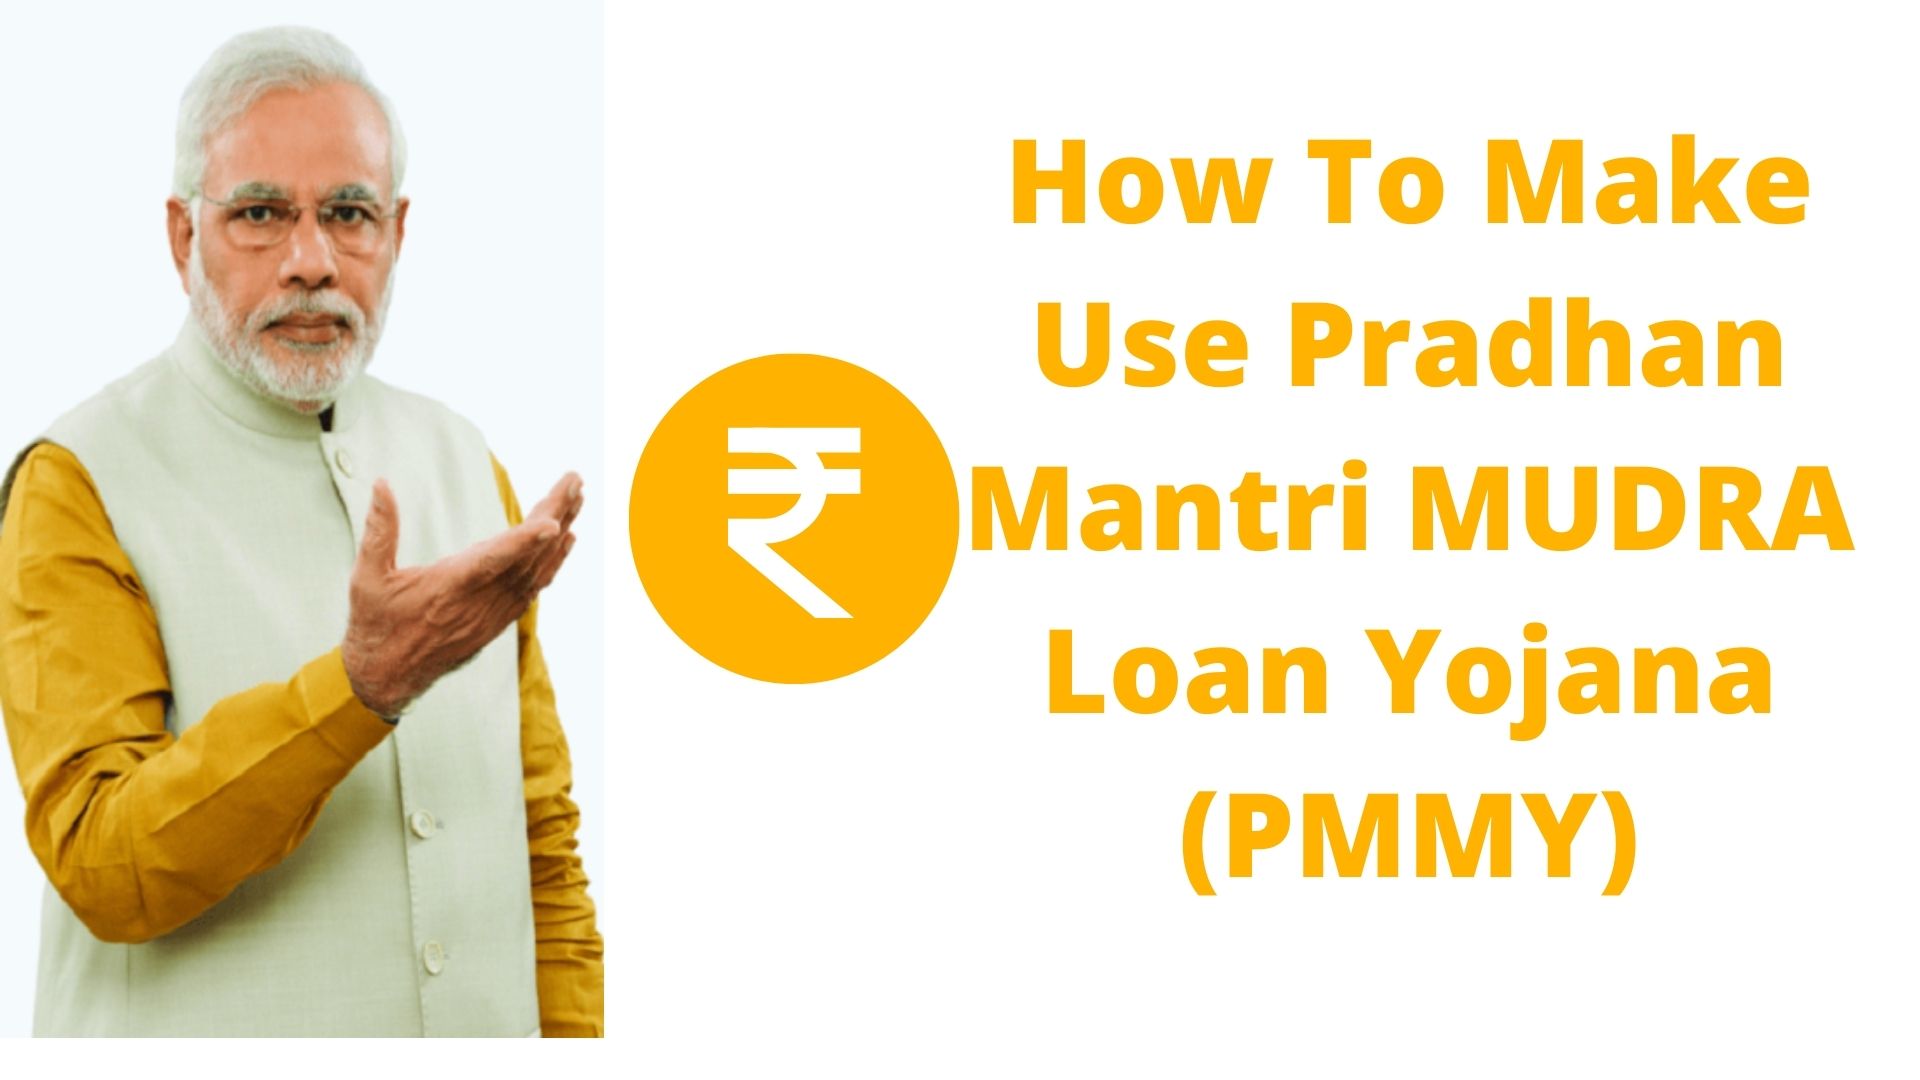 How To Make Use Pradhan Mantri MUDRA Loan Yojana